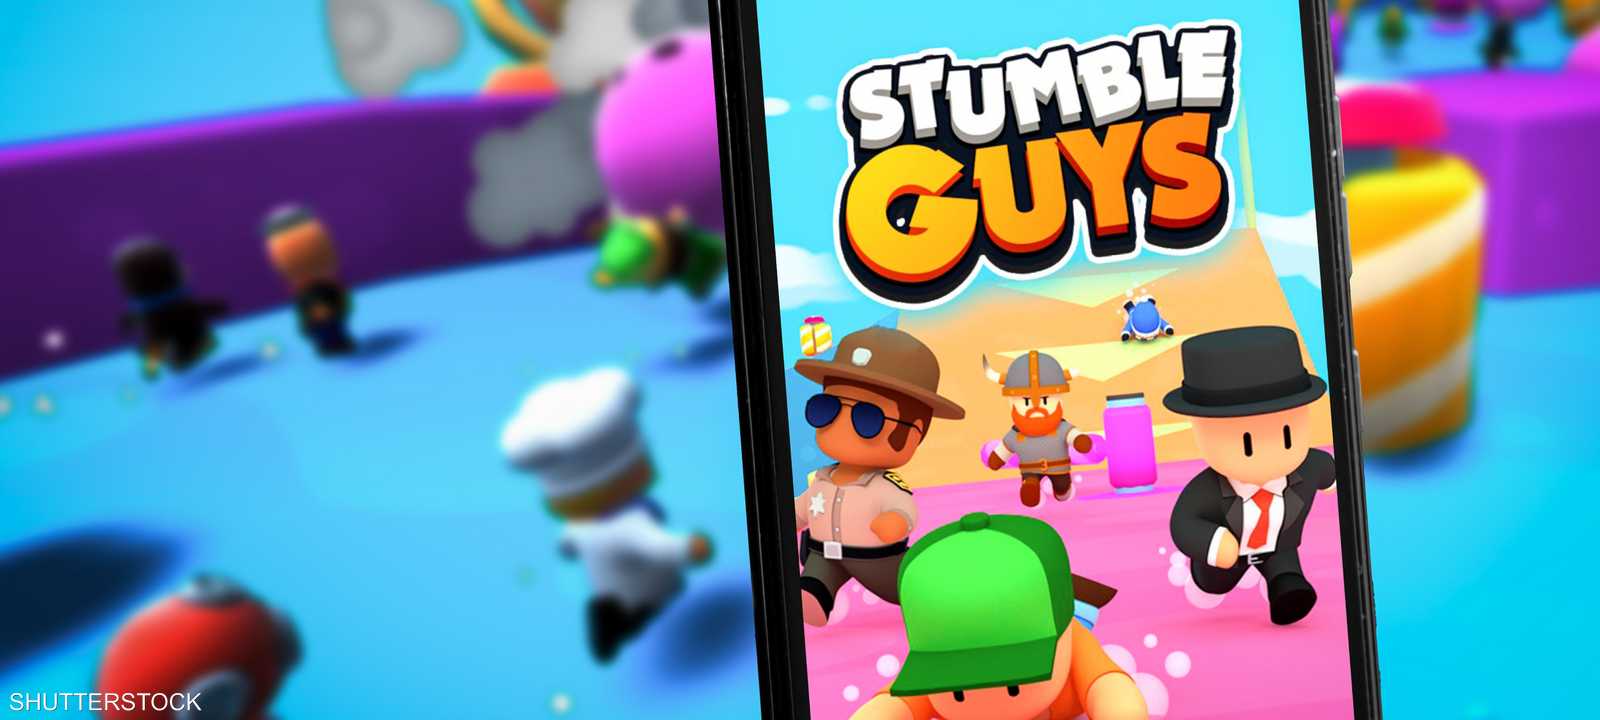 لعبة فيديو Stumble guys التابعة لشركة سكوبلي